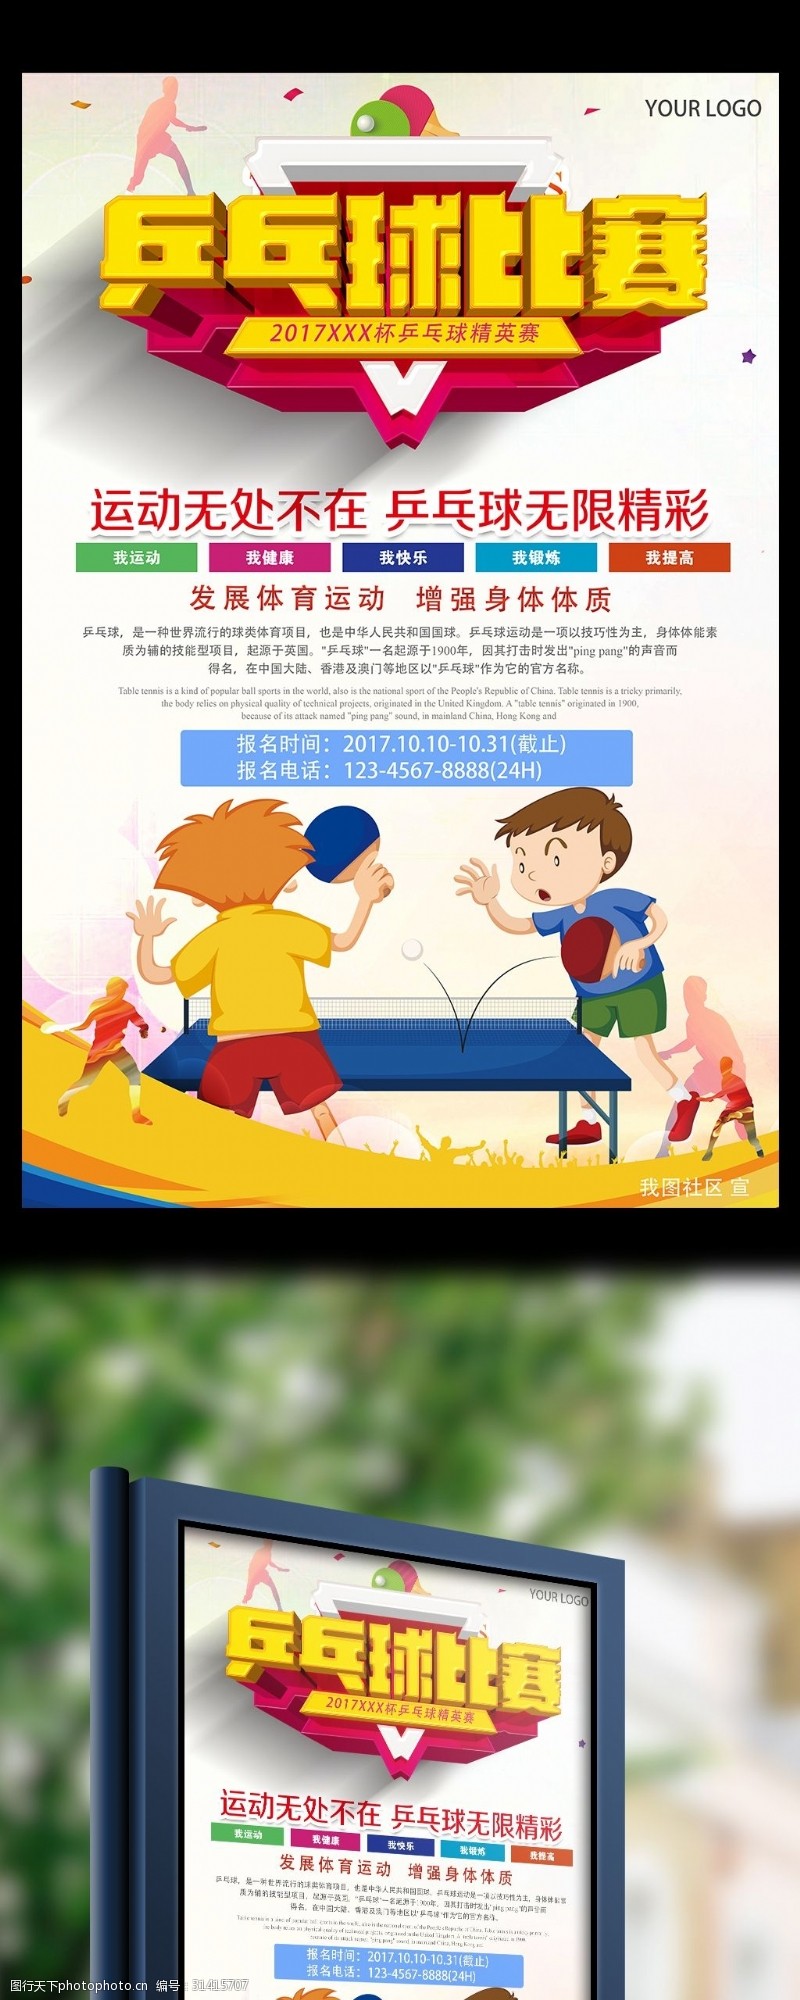 宣传栏模板体育运动乒乓球比赛宣传海报模板